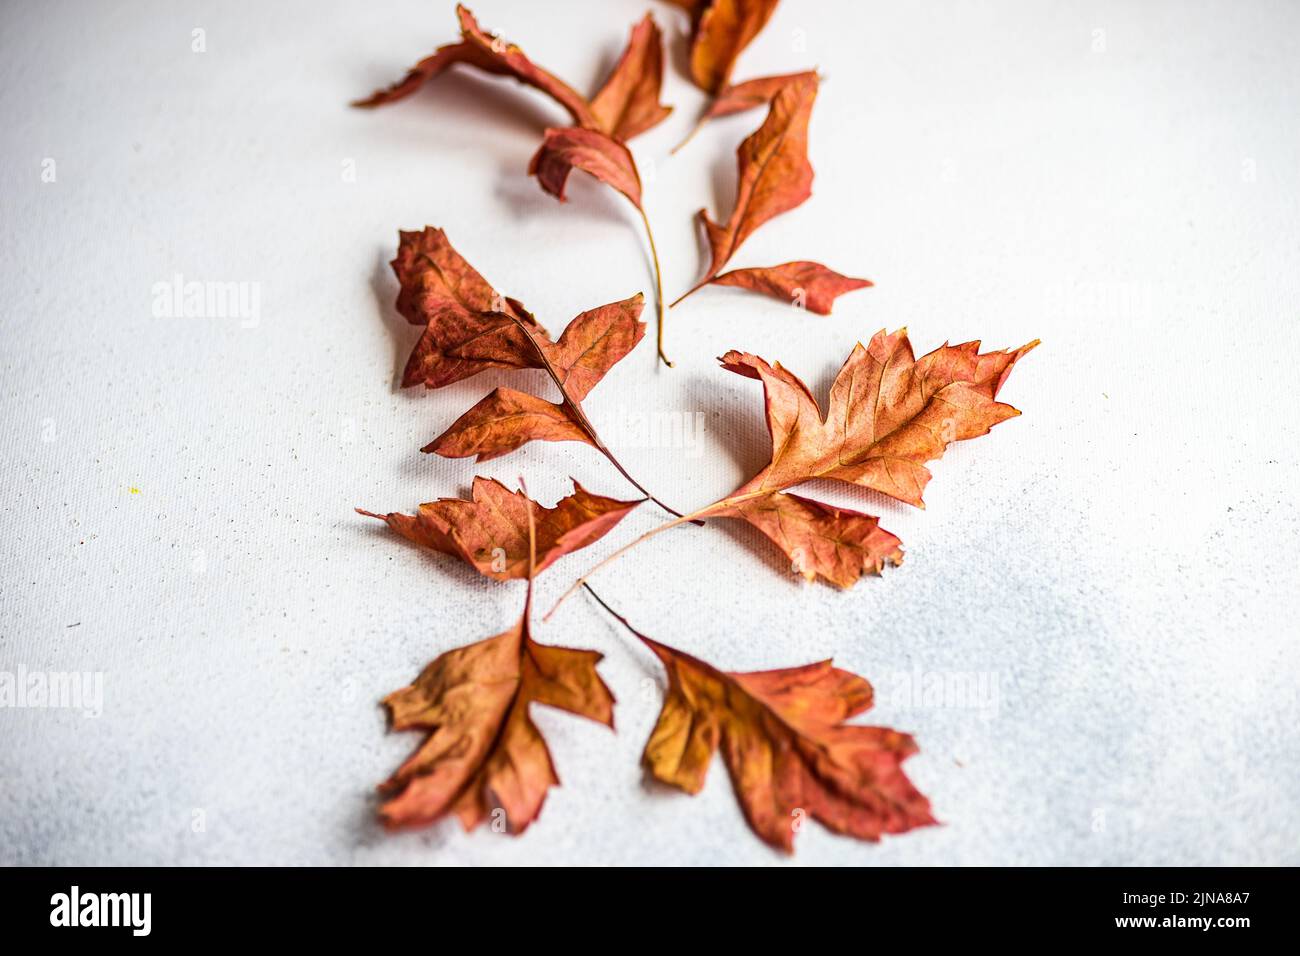 Puesta plana con hojas otoñales secas en colores neutros Foto de stock